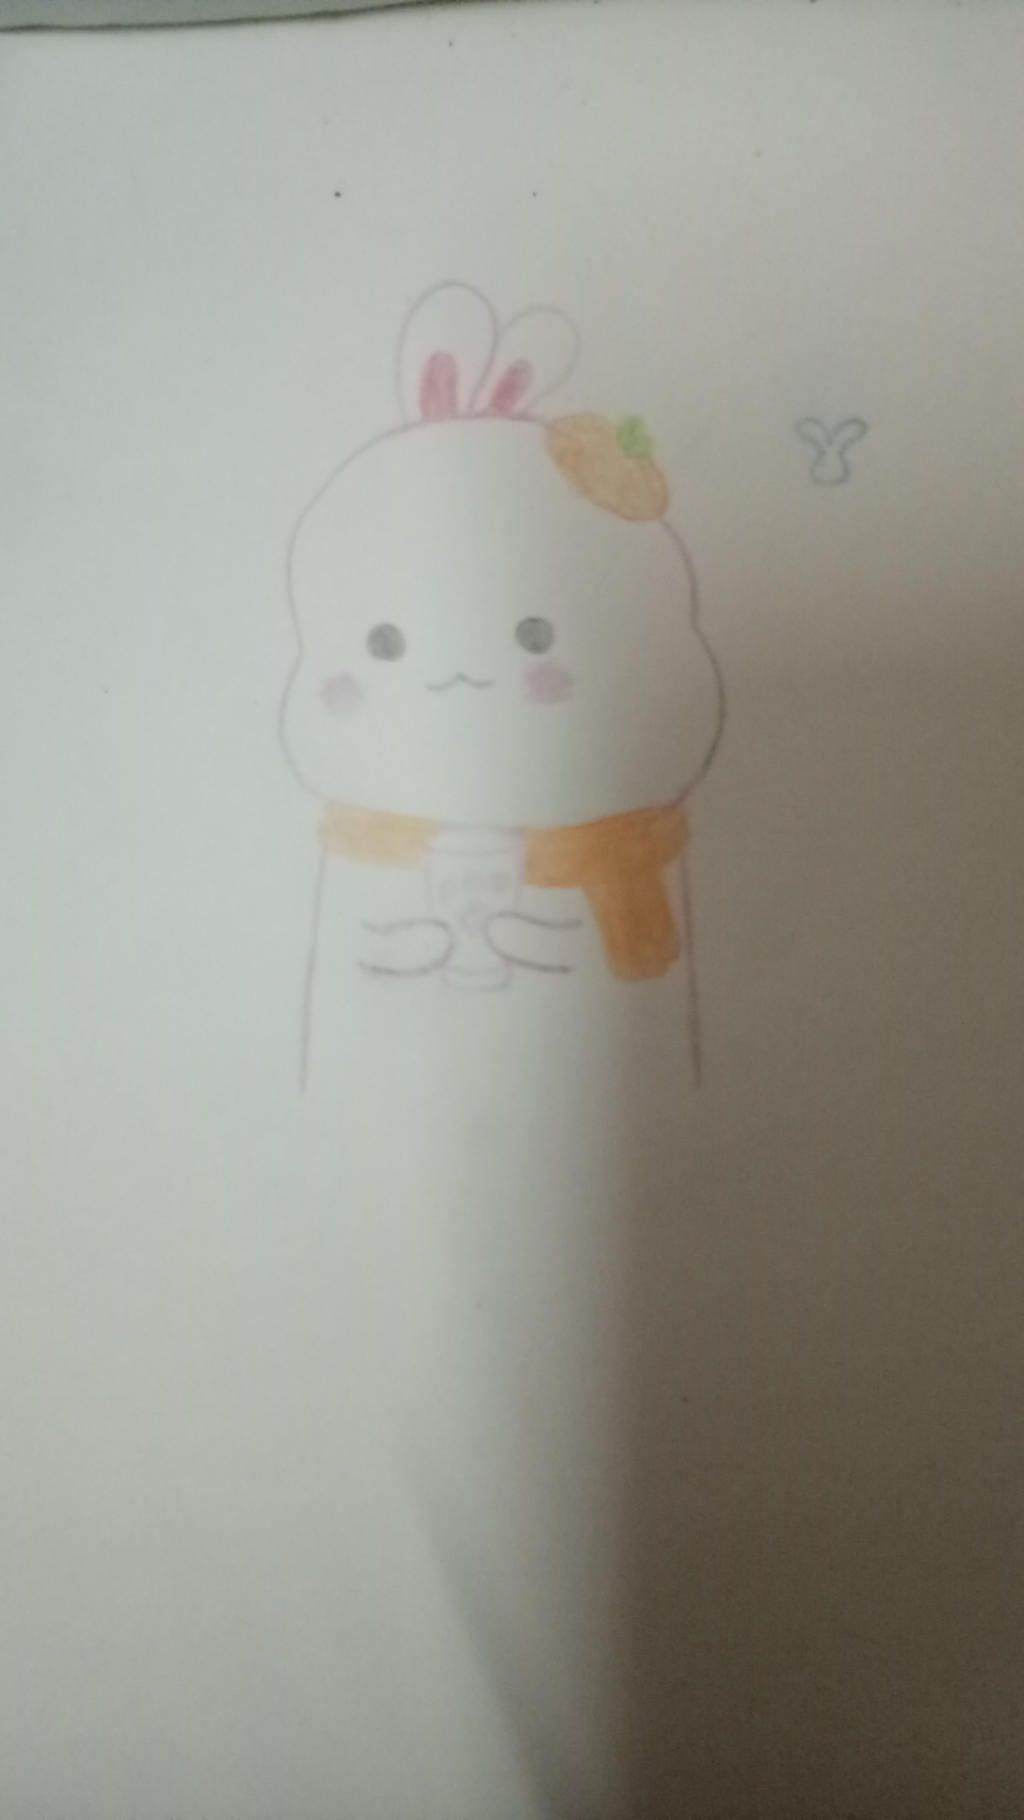 Vẽ chibi thỏ là một trong những hình ảnh được yêu thích nhất trong thế giới anime. Hãy tìm hiểu cách vẽ chibi thỏ với chúng tôi và trở thành một họa sĩ manga đích thực. Hãy cùng nhau tạo ra những tác phẩm chibi thỏ đáng yêu nhất và chinh phục khán giả.